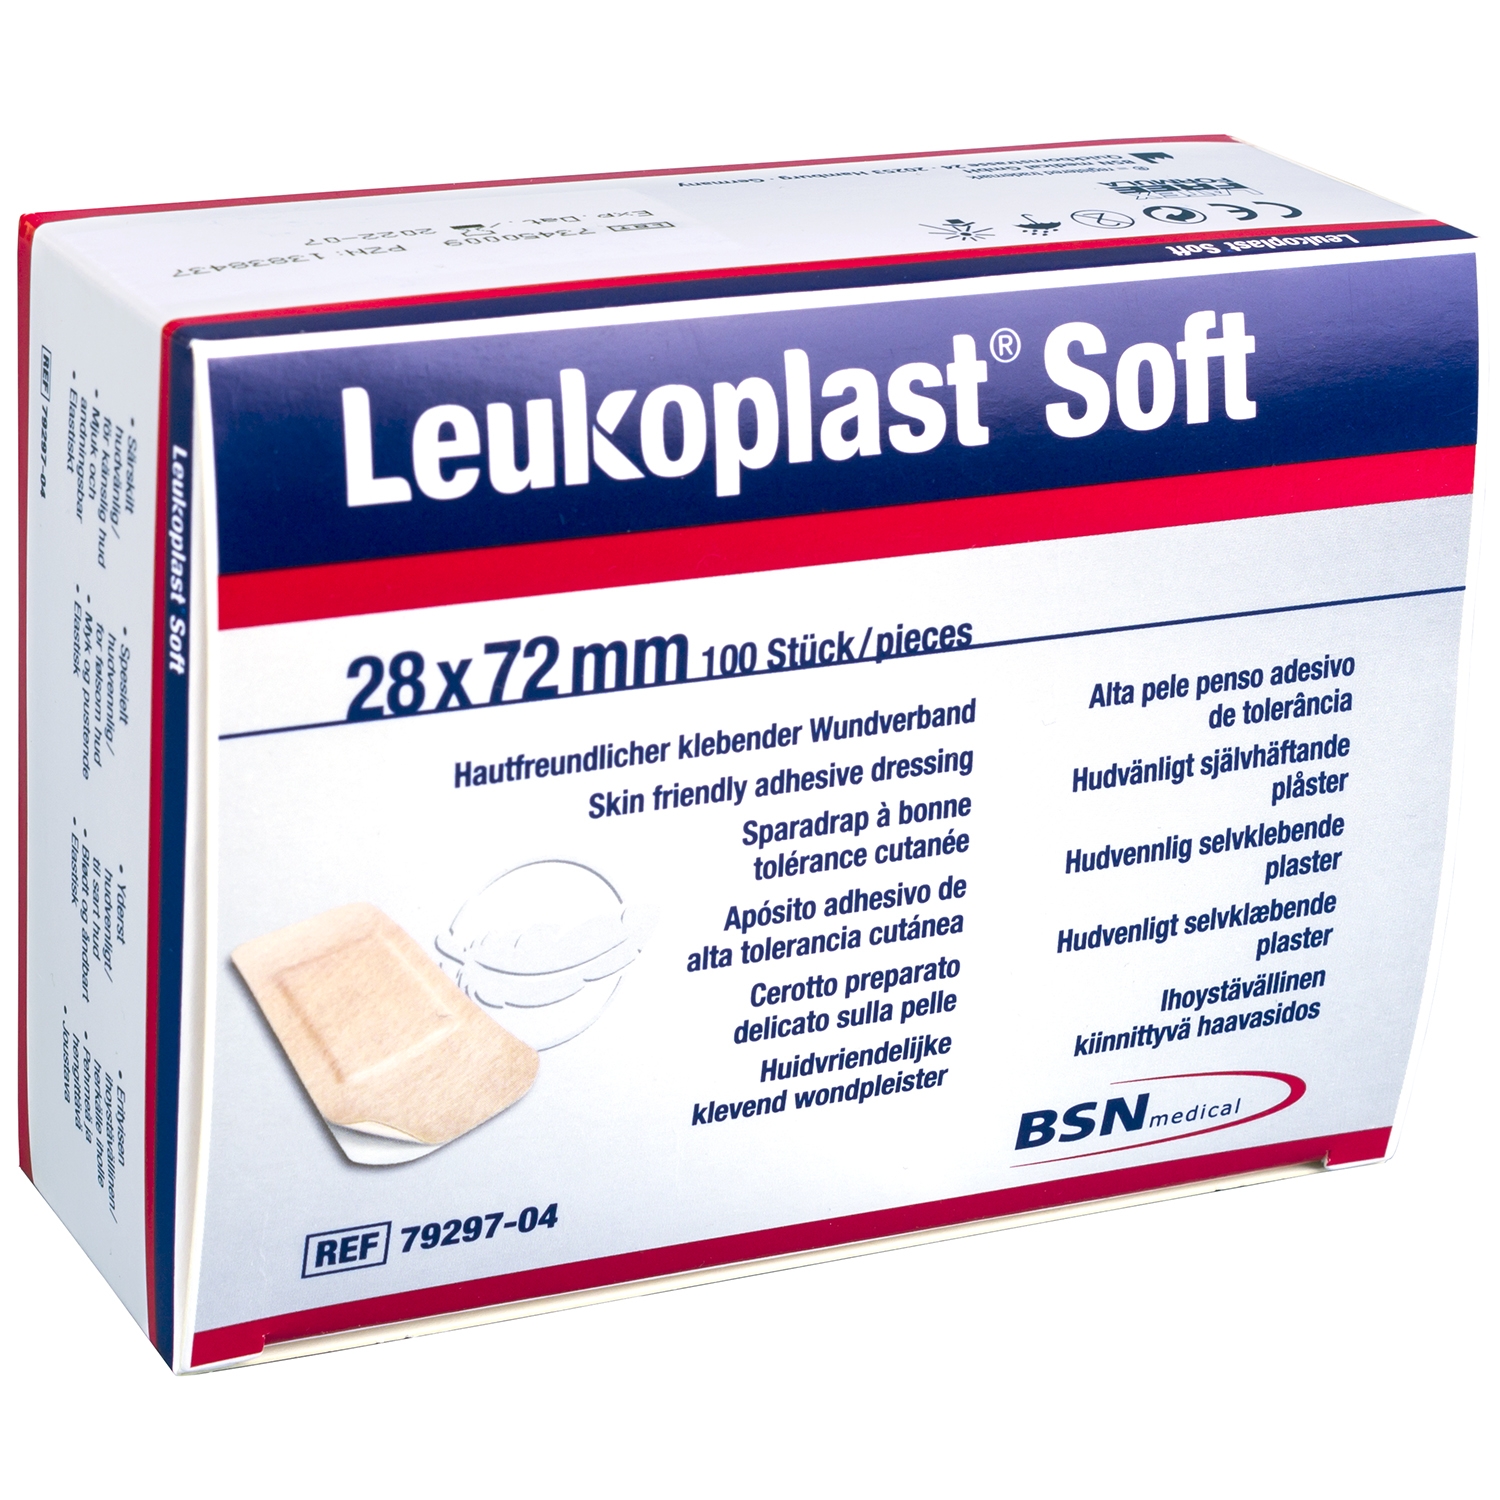 Leukoplast soft - 28 x 72 mm (100 st)